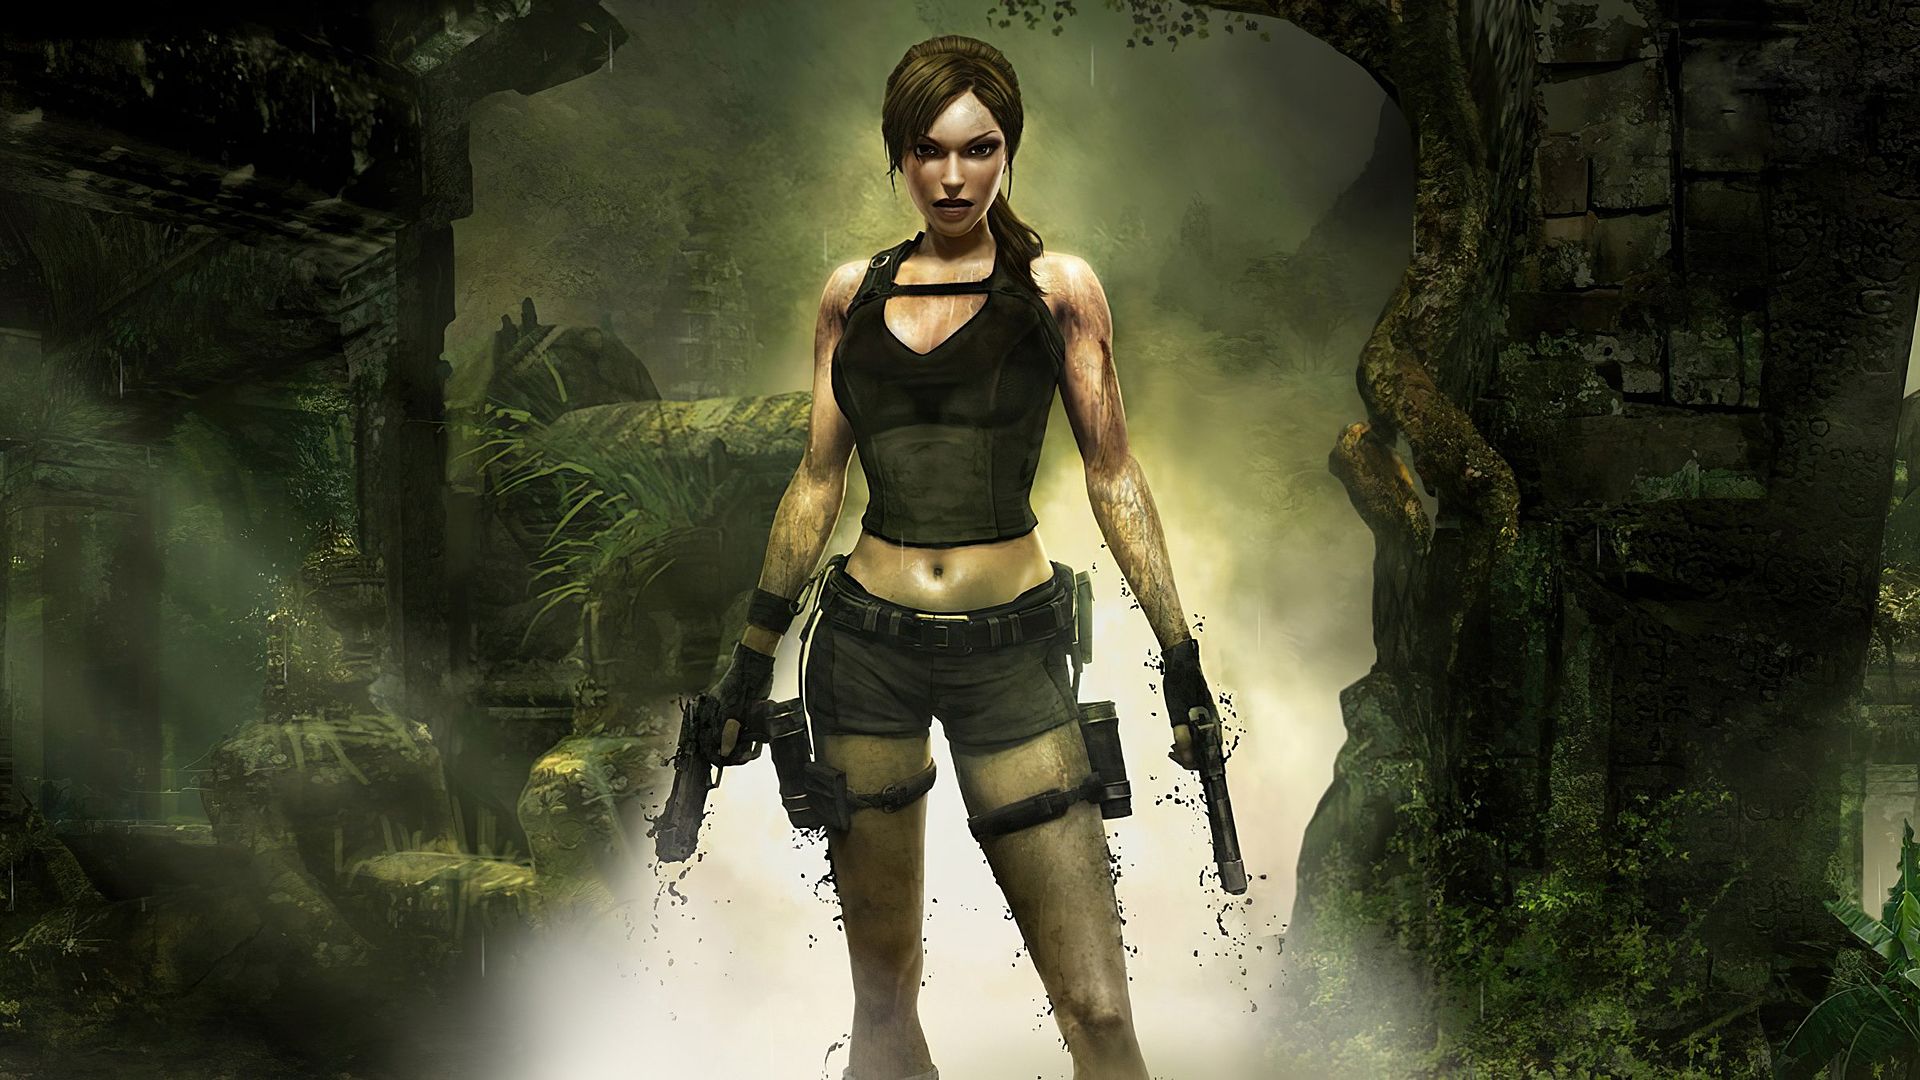 Descarga gratuita de fondo de pantalla para móvil de Tomb Raider, Videojuego, Lara Croft, Tomb Raider: Underworld.